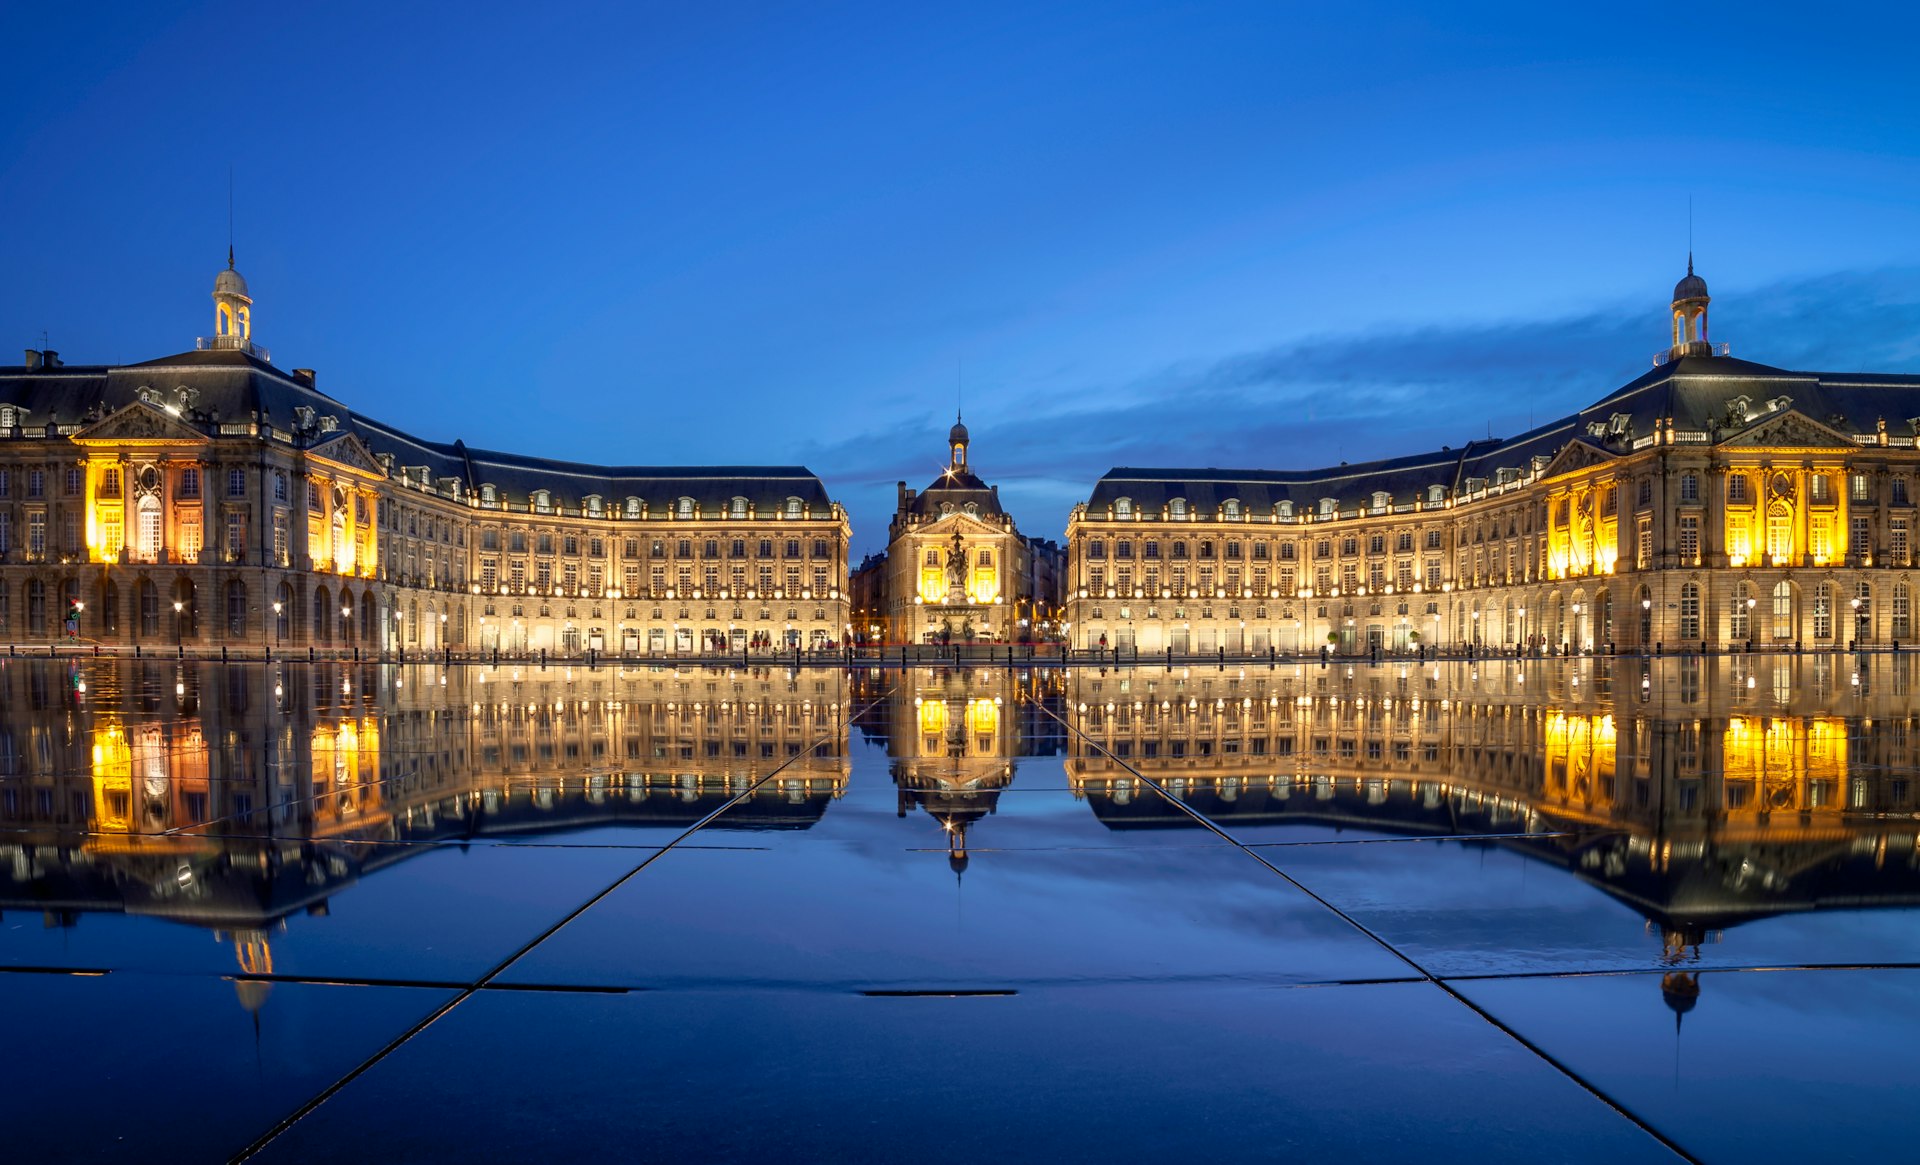 Place de la Bourse and the miroir d’eau, Bordeaux France